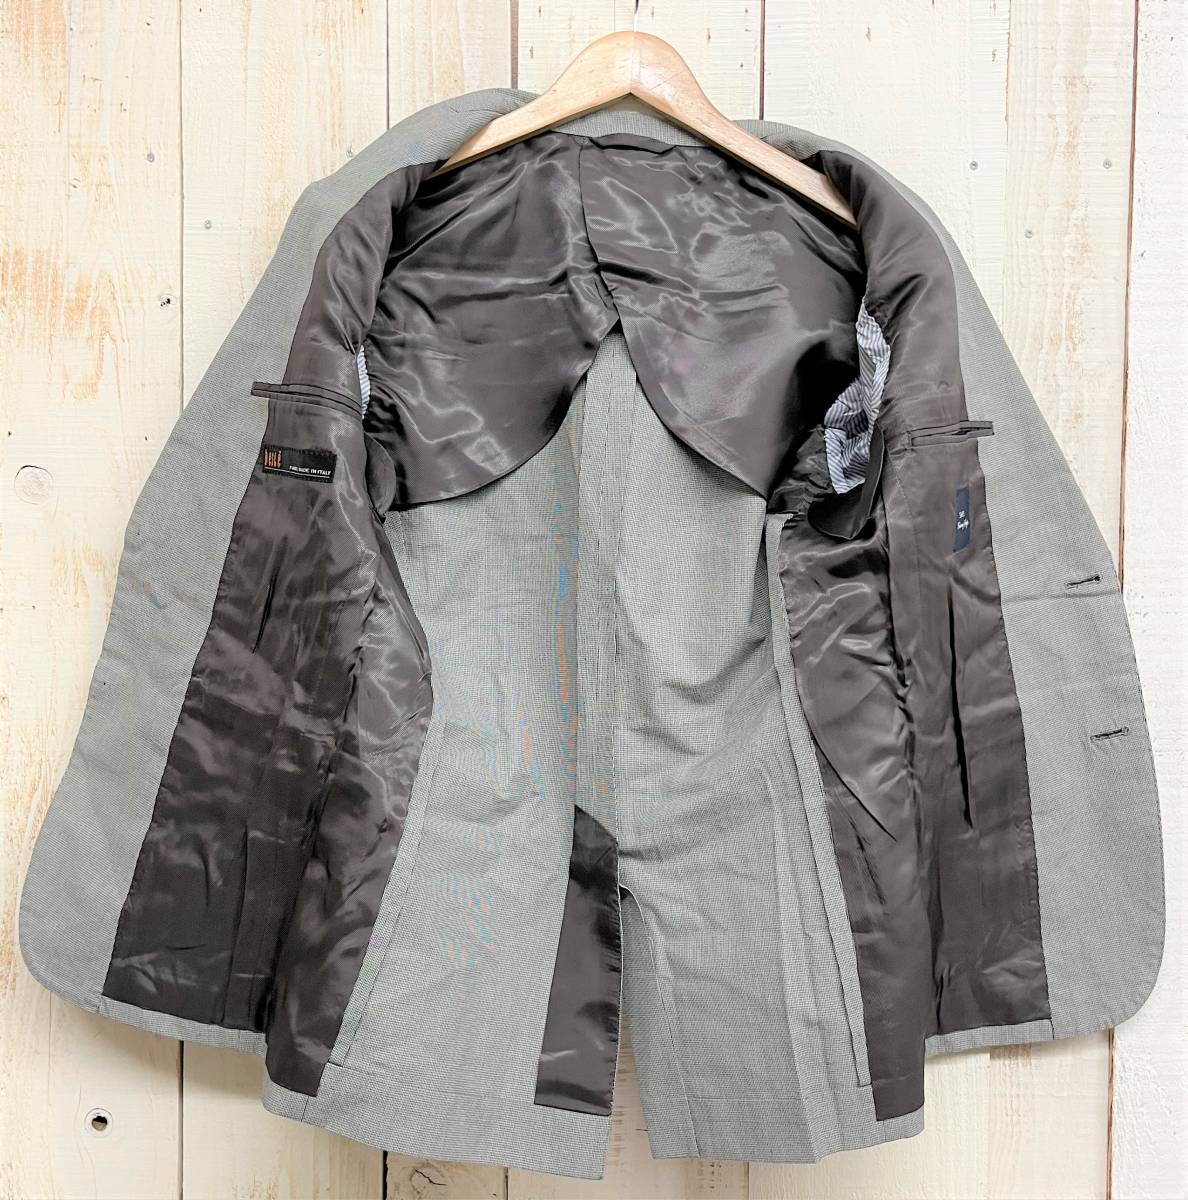 SHIPS Ships * тысяч птица ..linen лен .* tailored jacket *44 size * серый серия одиночный центральный отдушина .. сделано в Японии джентльмен мужской 